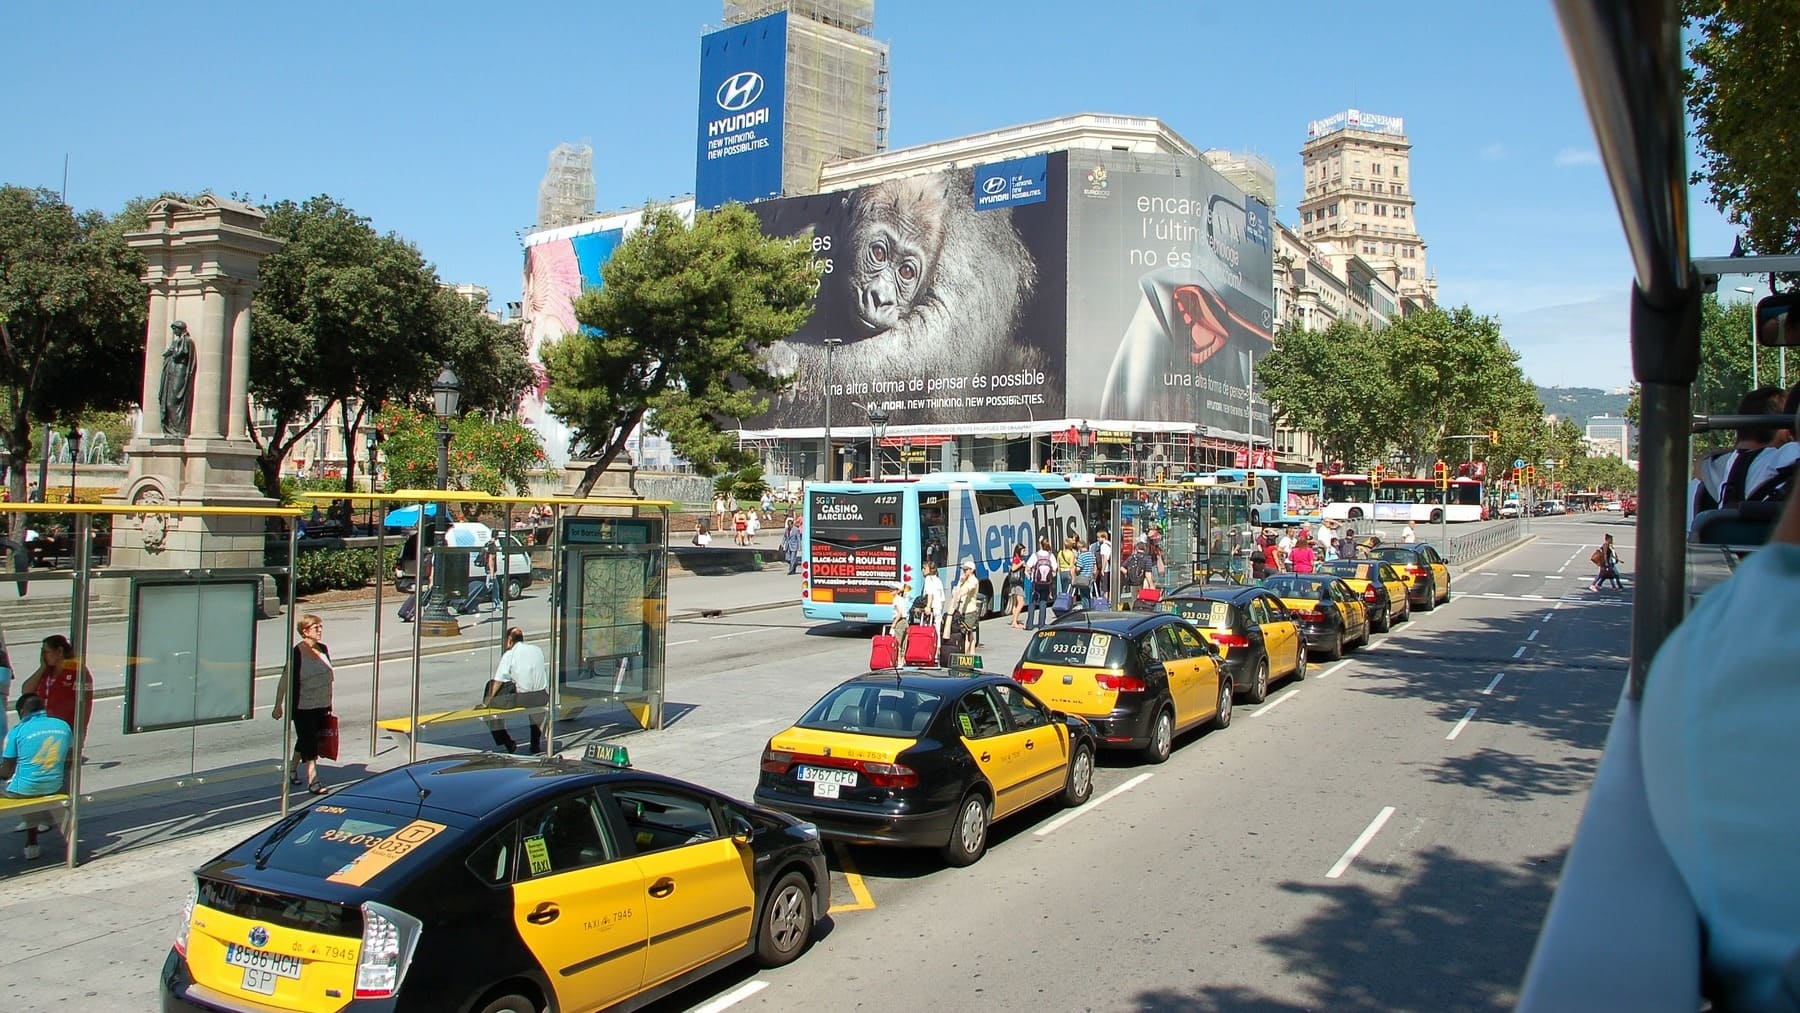 ¿Por qué los taxis en Barcelona son negros y amarillos?